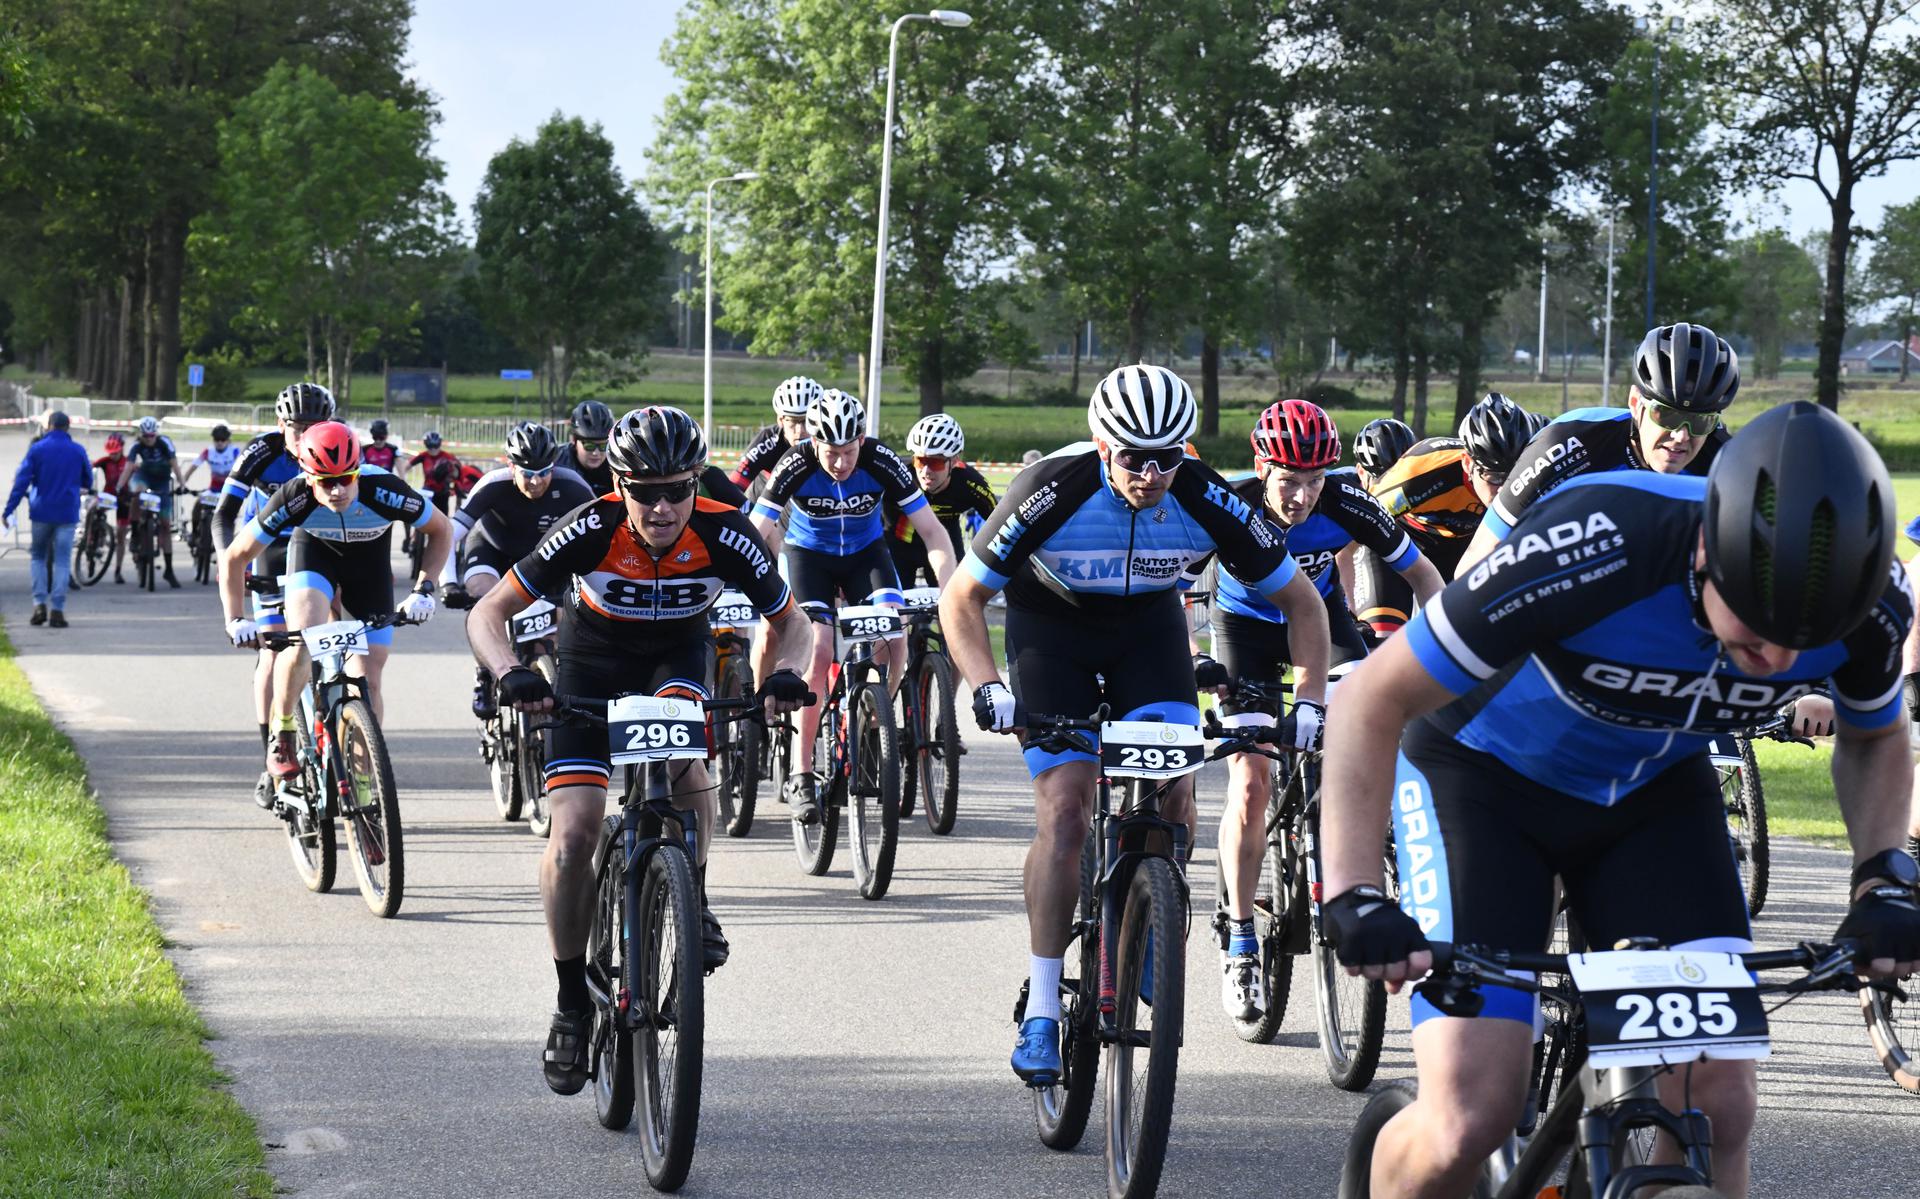 De WTC Staphorst-Rouveen hield kort geleden nog een streetrace op evenemententerrein De Tippe. Op 25 juni staat de tocht 'Rondom Staphorst' gepland, bestemd voor deelnemers op gewone en elektrische fietsen alsmede voor racefietsers.